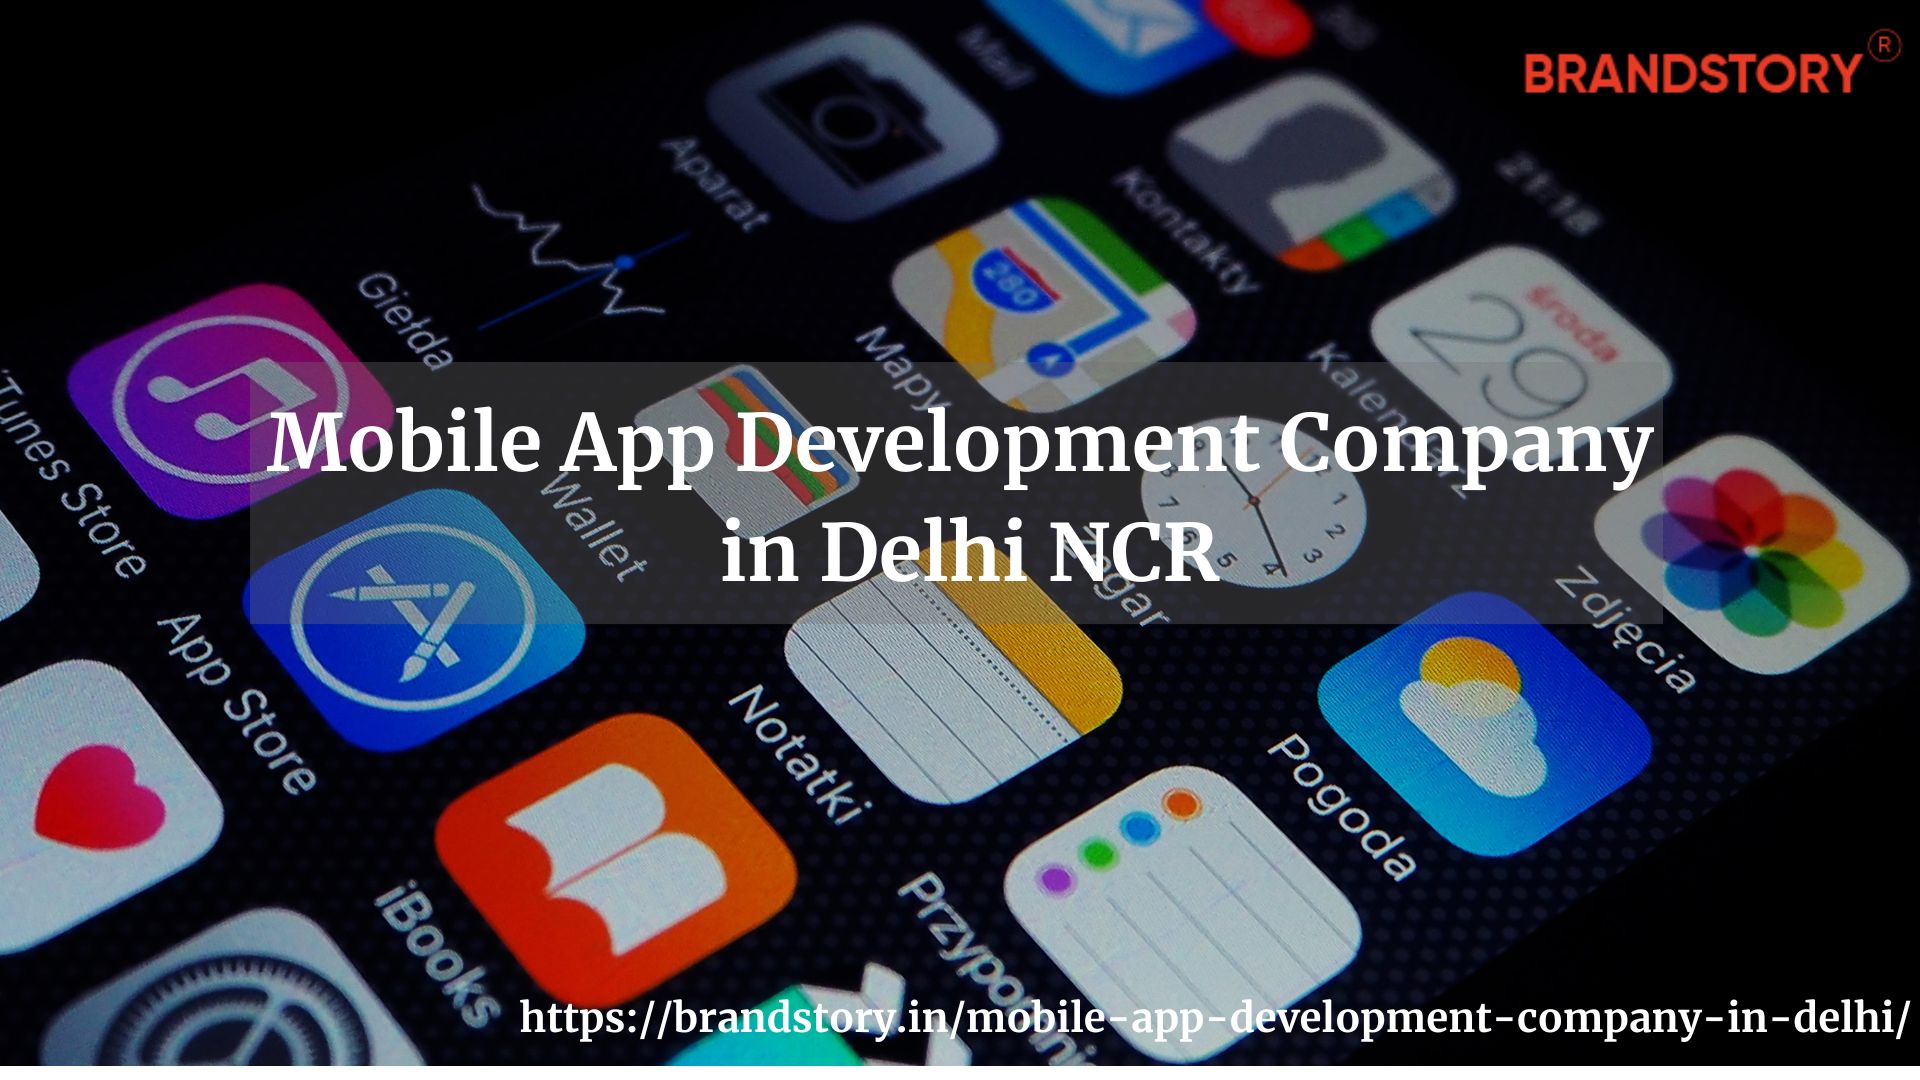 Mobile App Development Company in Delhi NCR